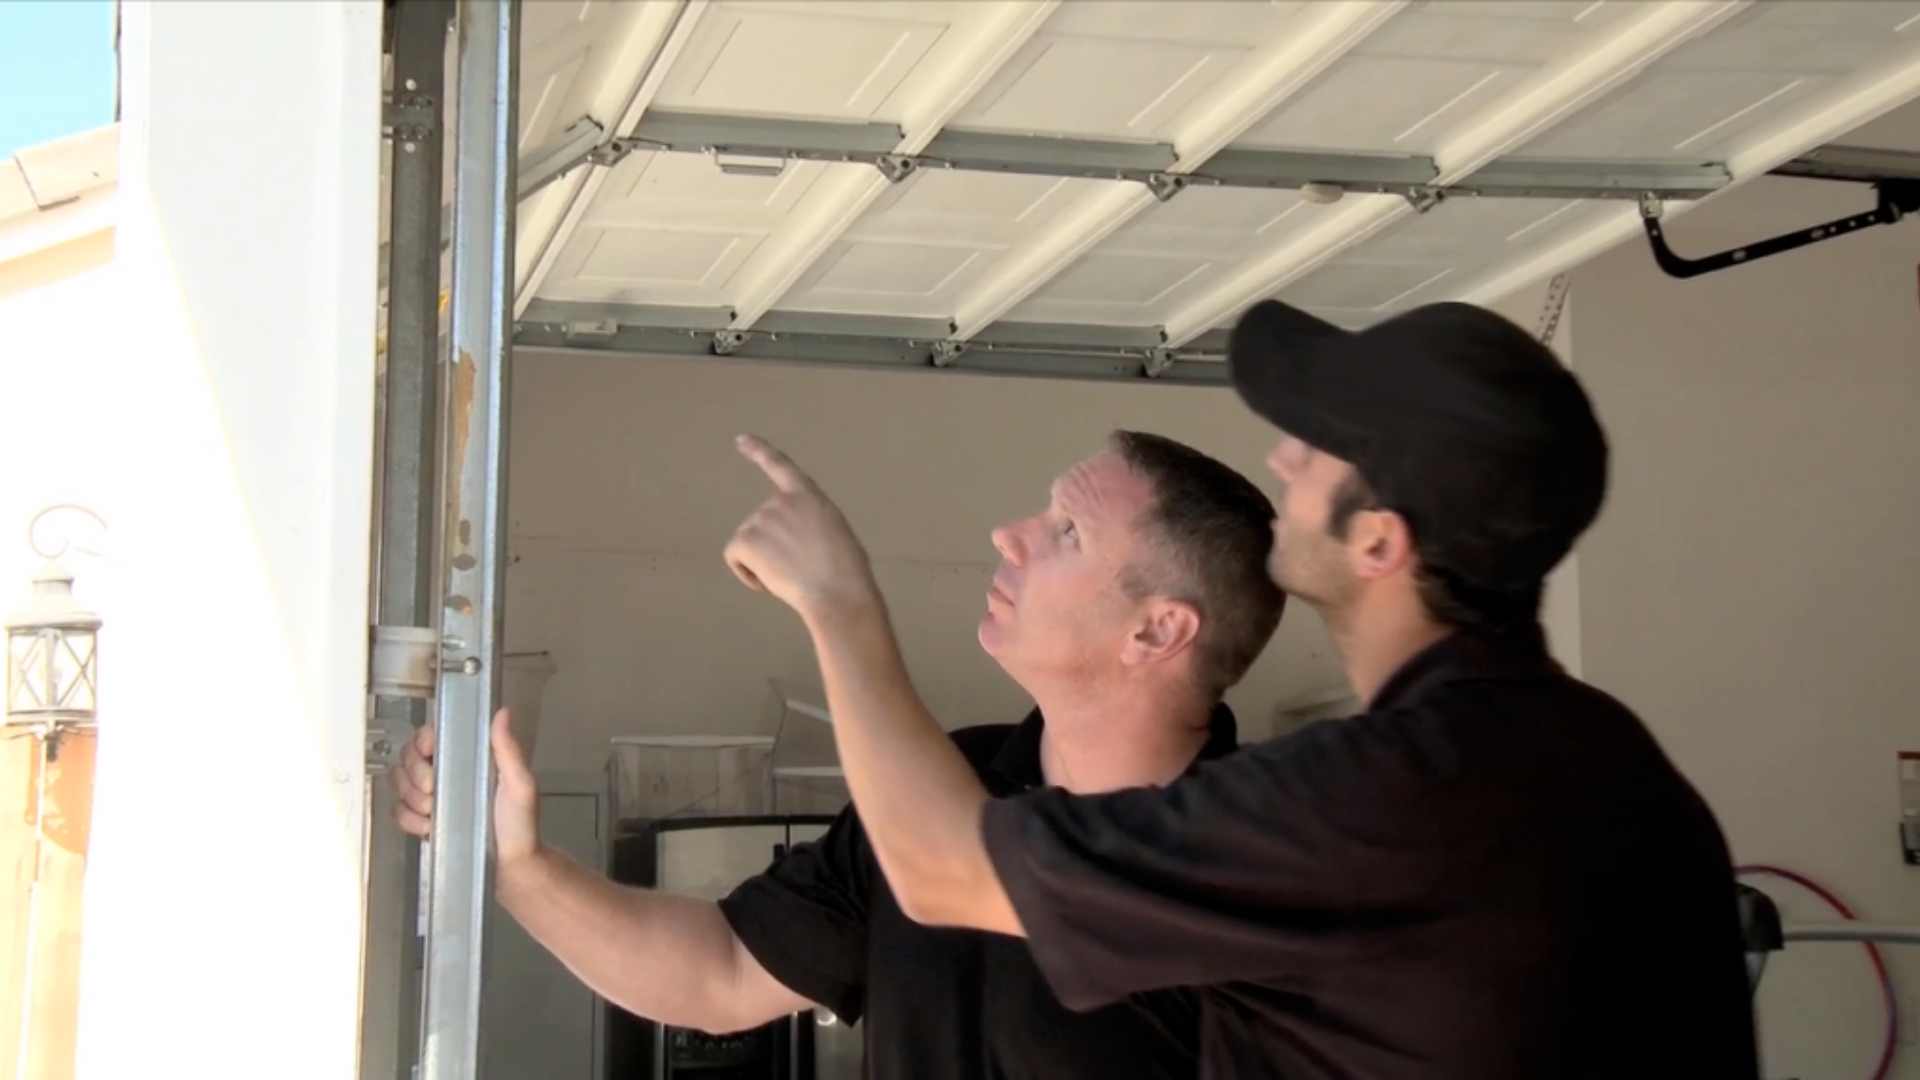 Two garage door technicians inspecting the garage door